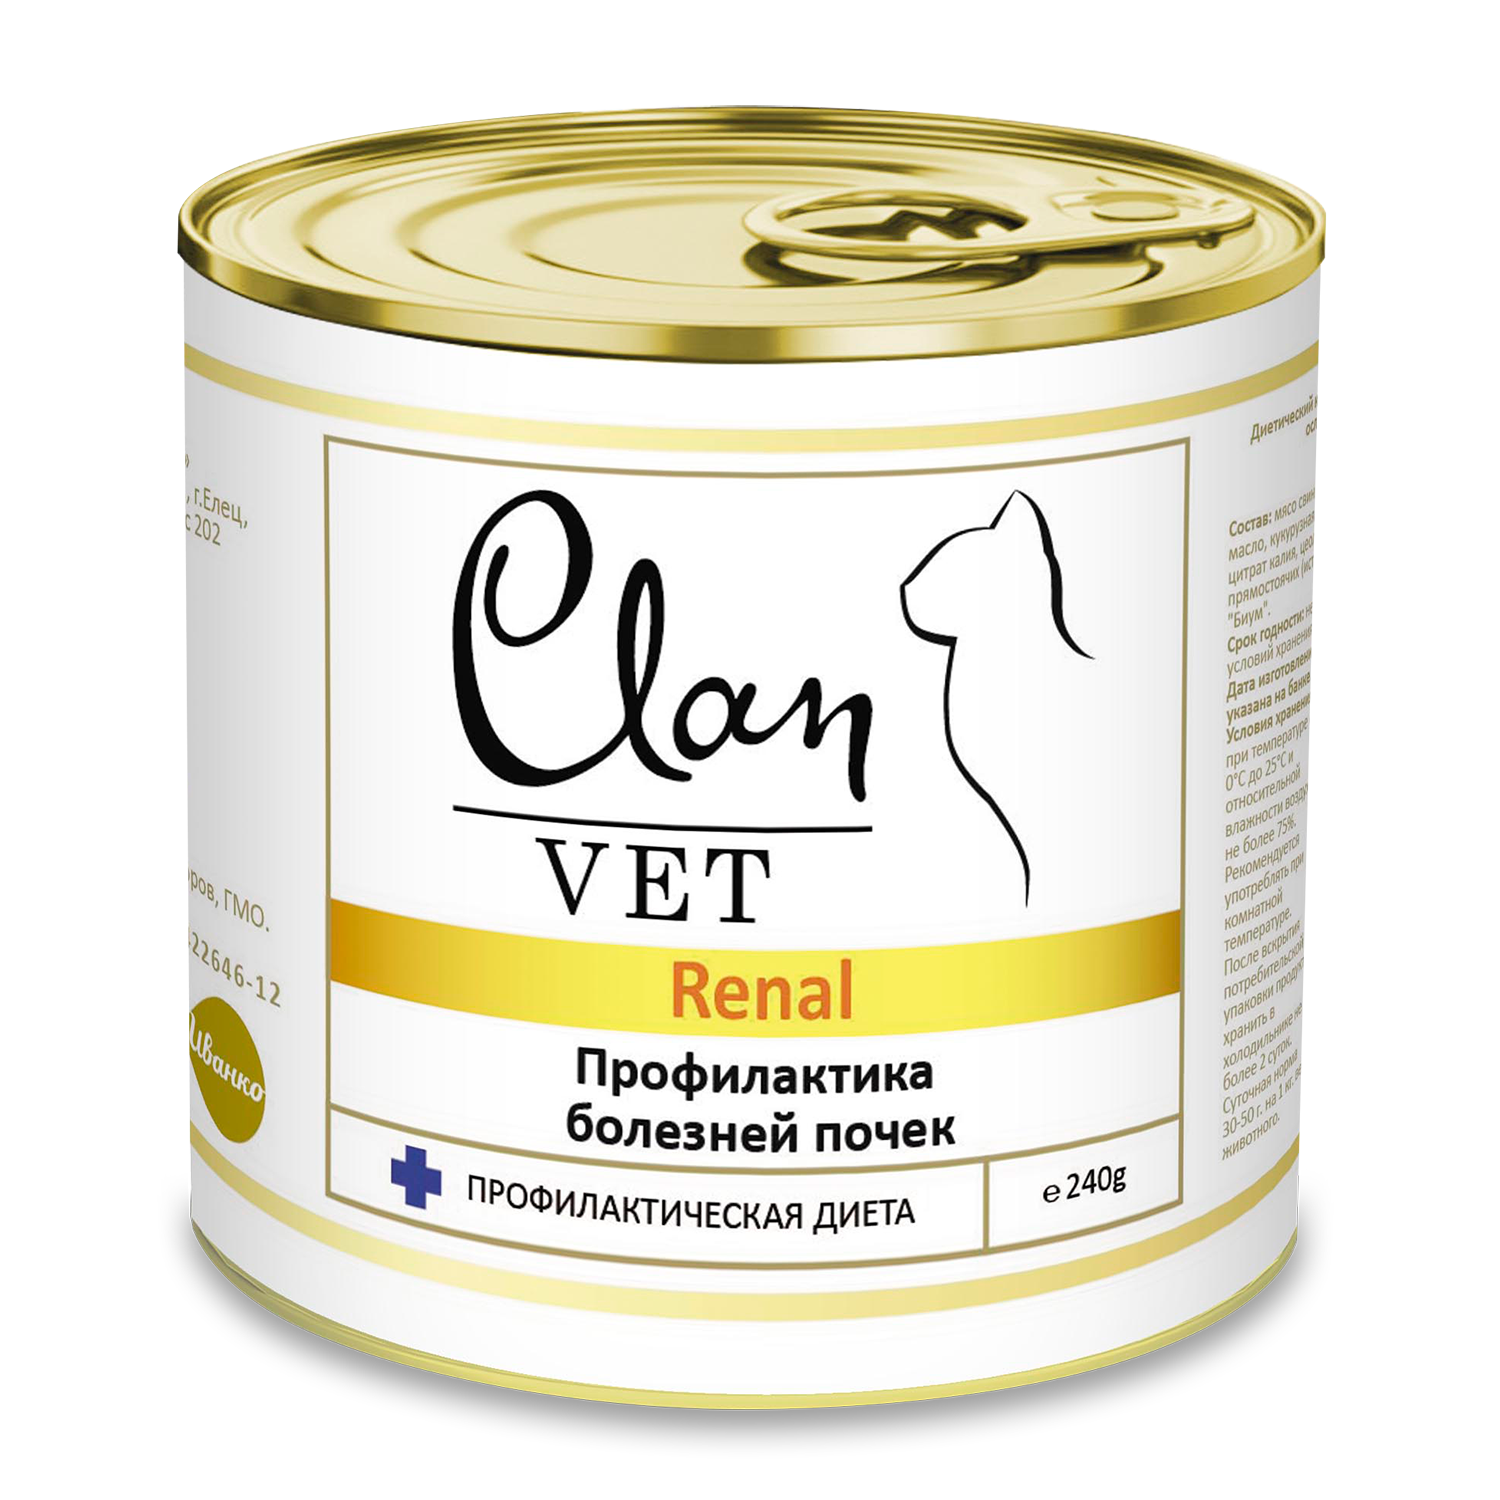 Корм для кошек Clan vet renal профилактика болезней почек диетические консервы 240г - фото 1